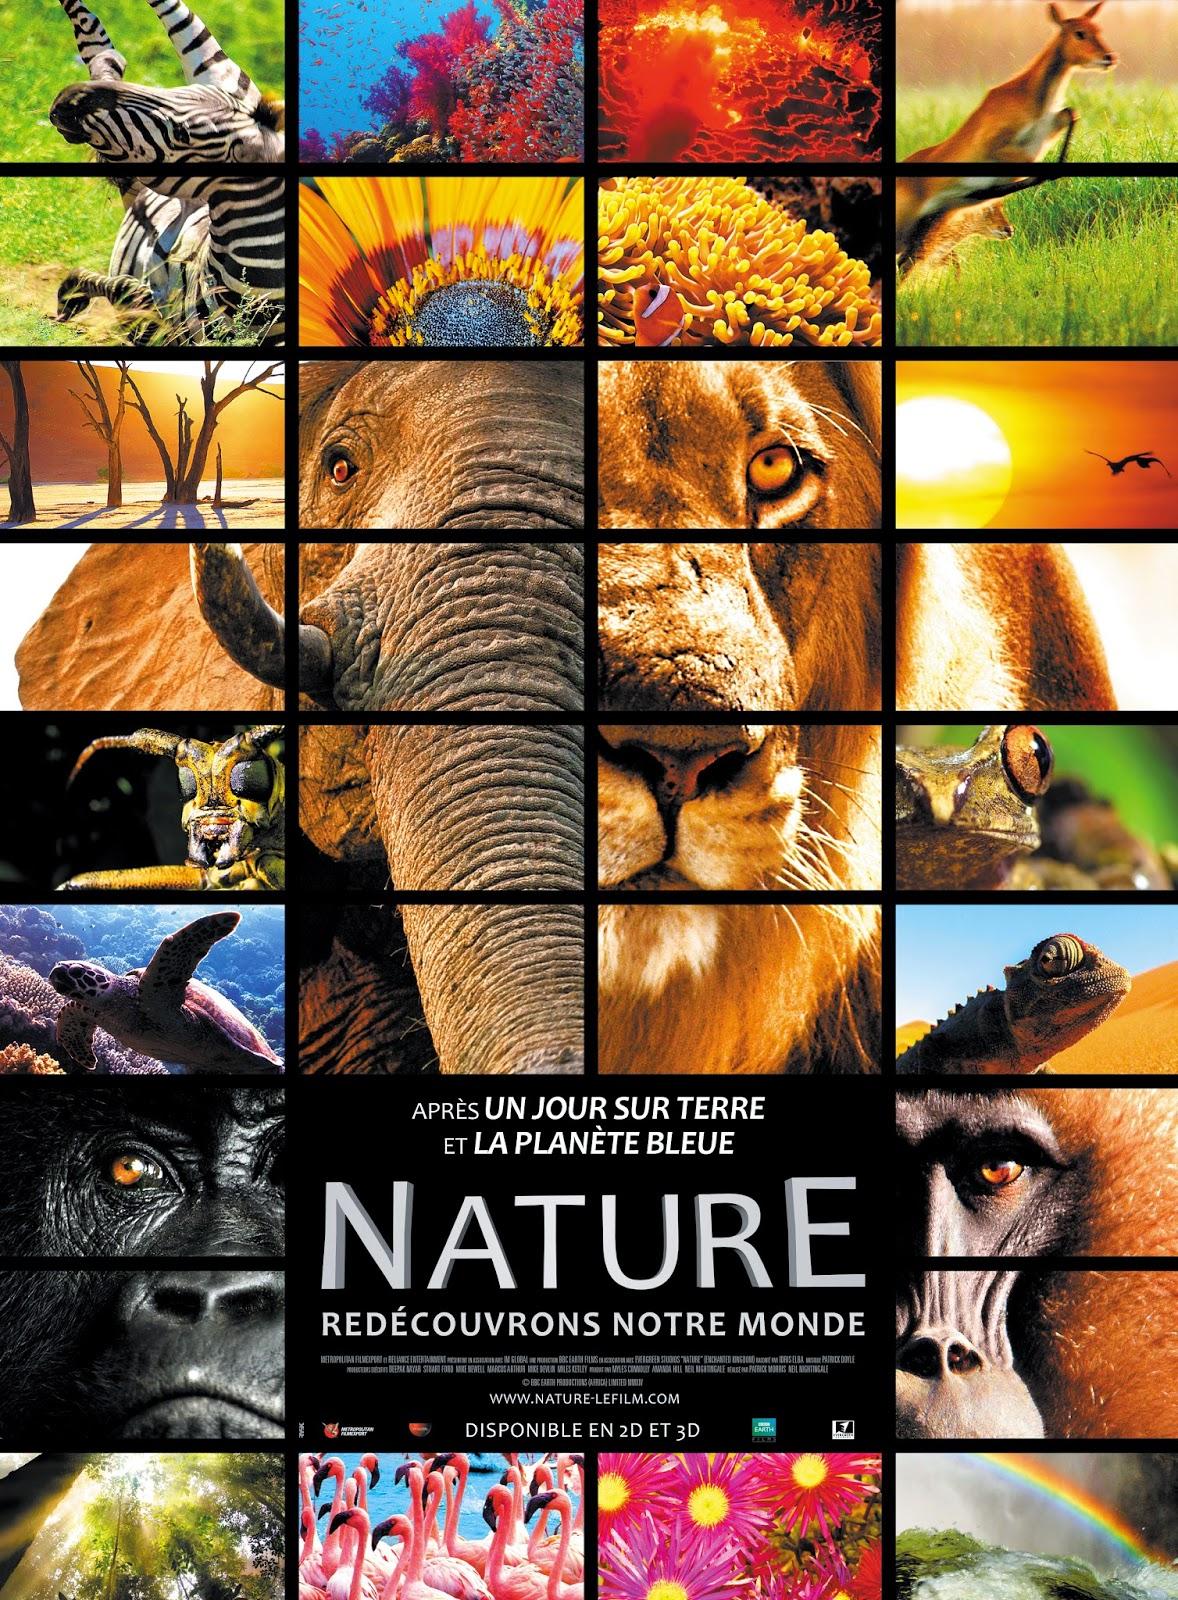 Découvrez Nature le 24/12 au cinéma !